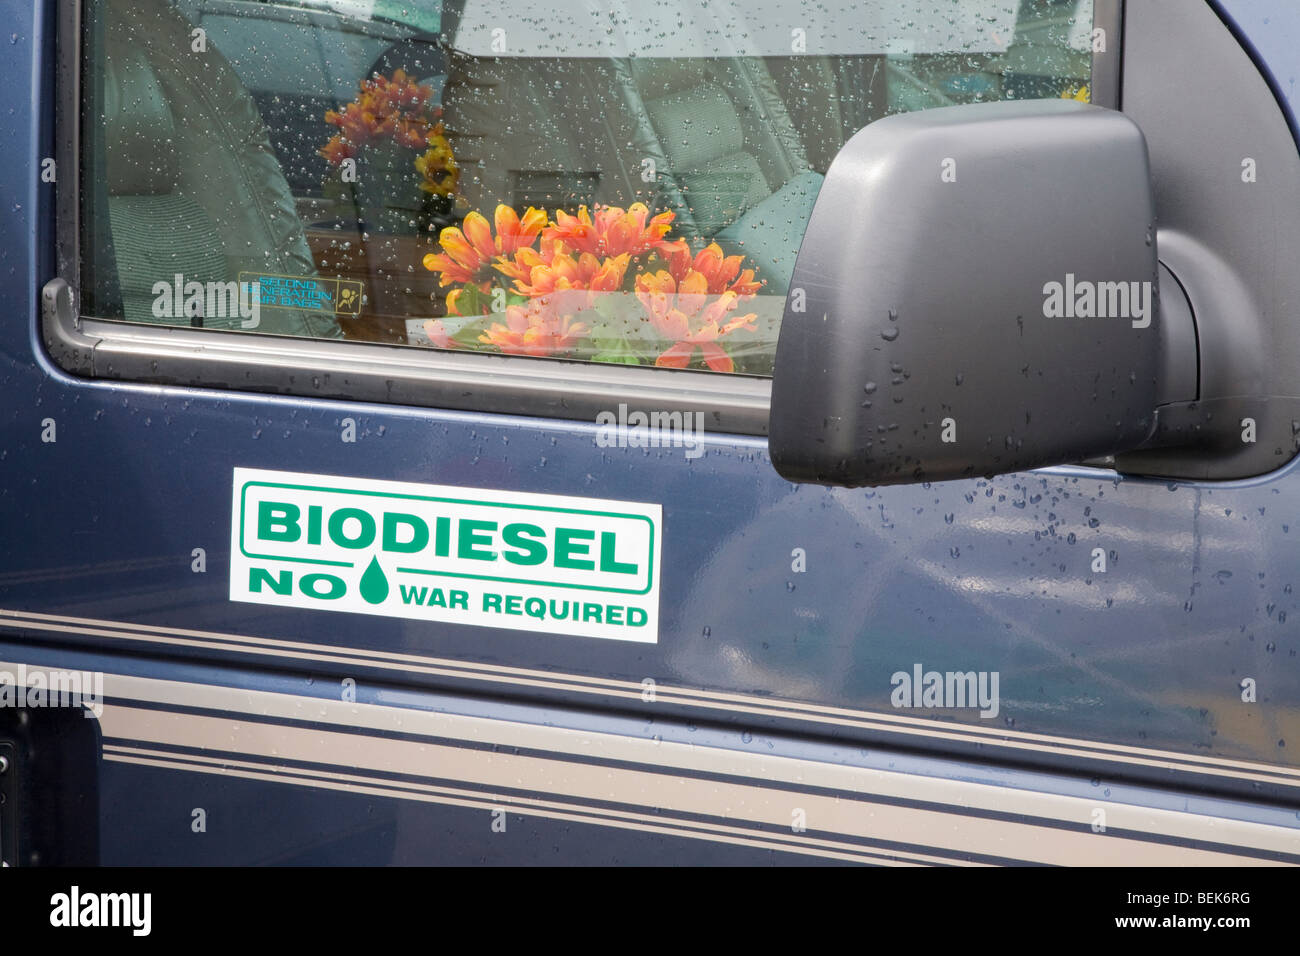 Autoaufkleber auf van umgewandelt, die mit Biodiesel fahren. Aufkleber  liest Biodiesel, keine Krieg erforderlich. San Francisco, Kalifornien,  USA Stockfotografie - Alamy